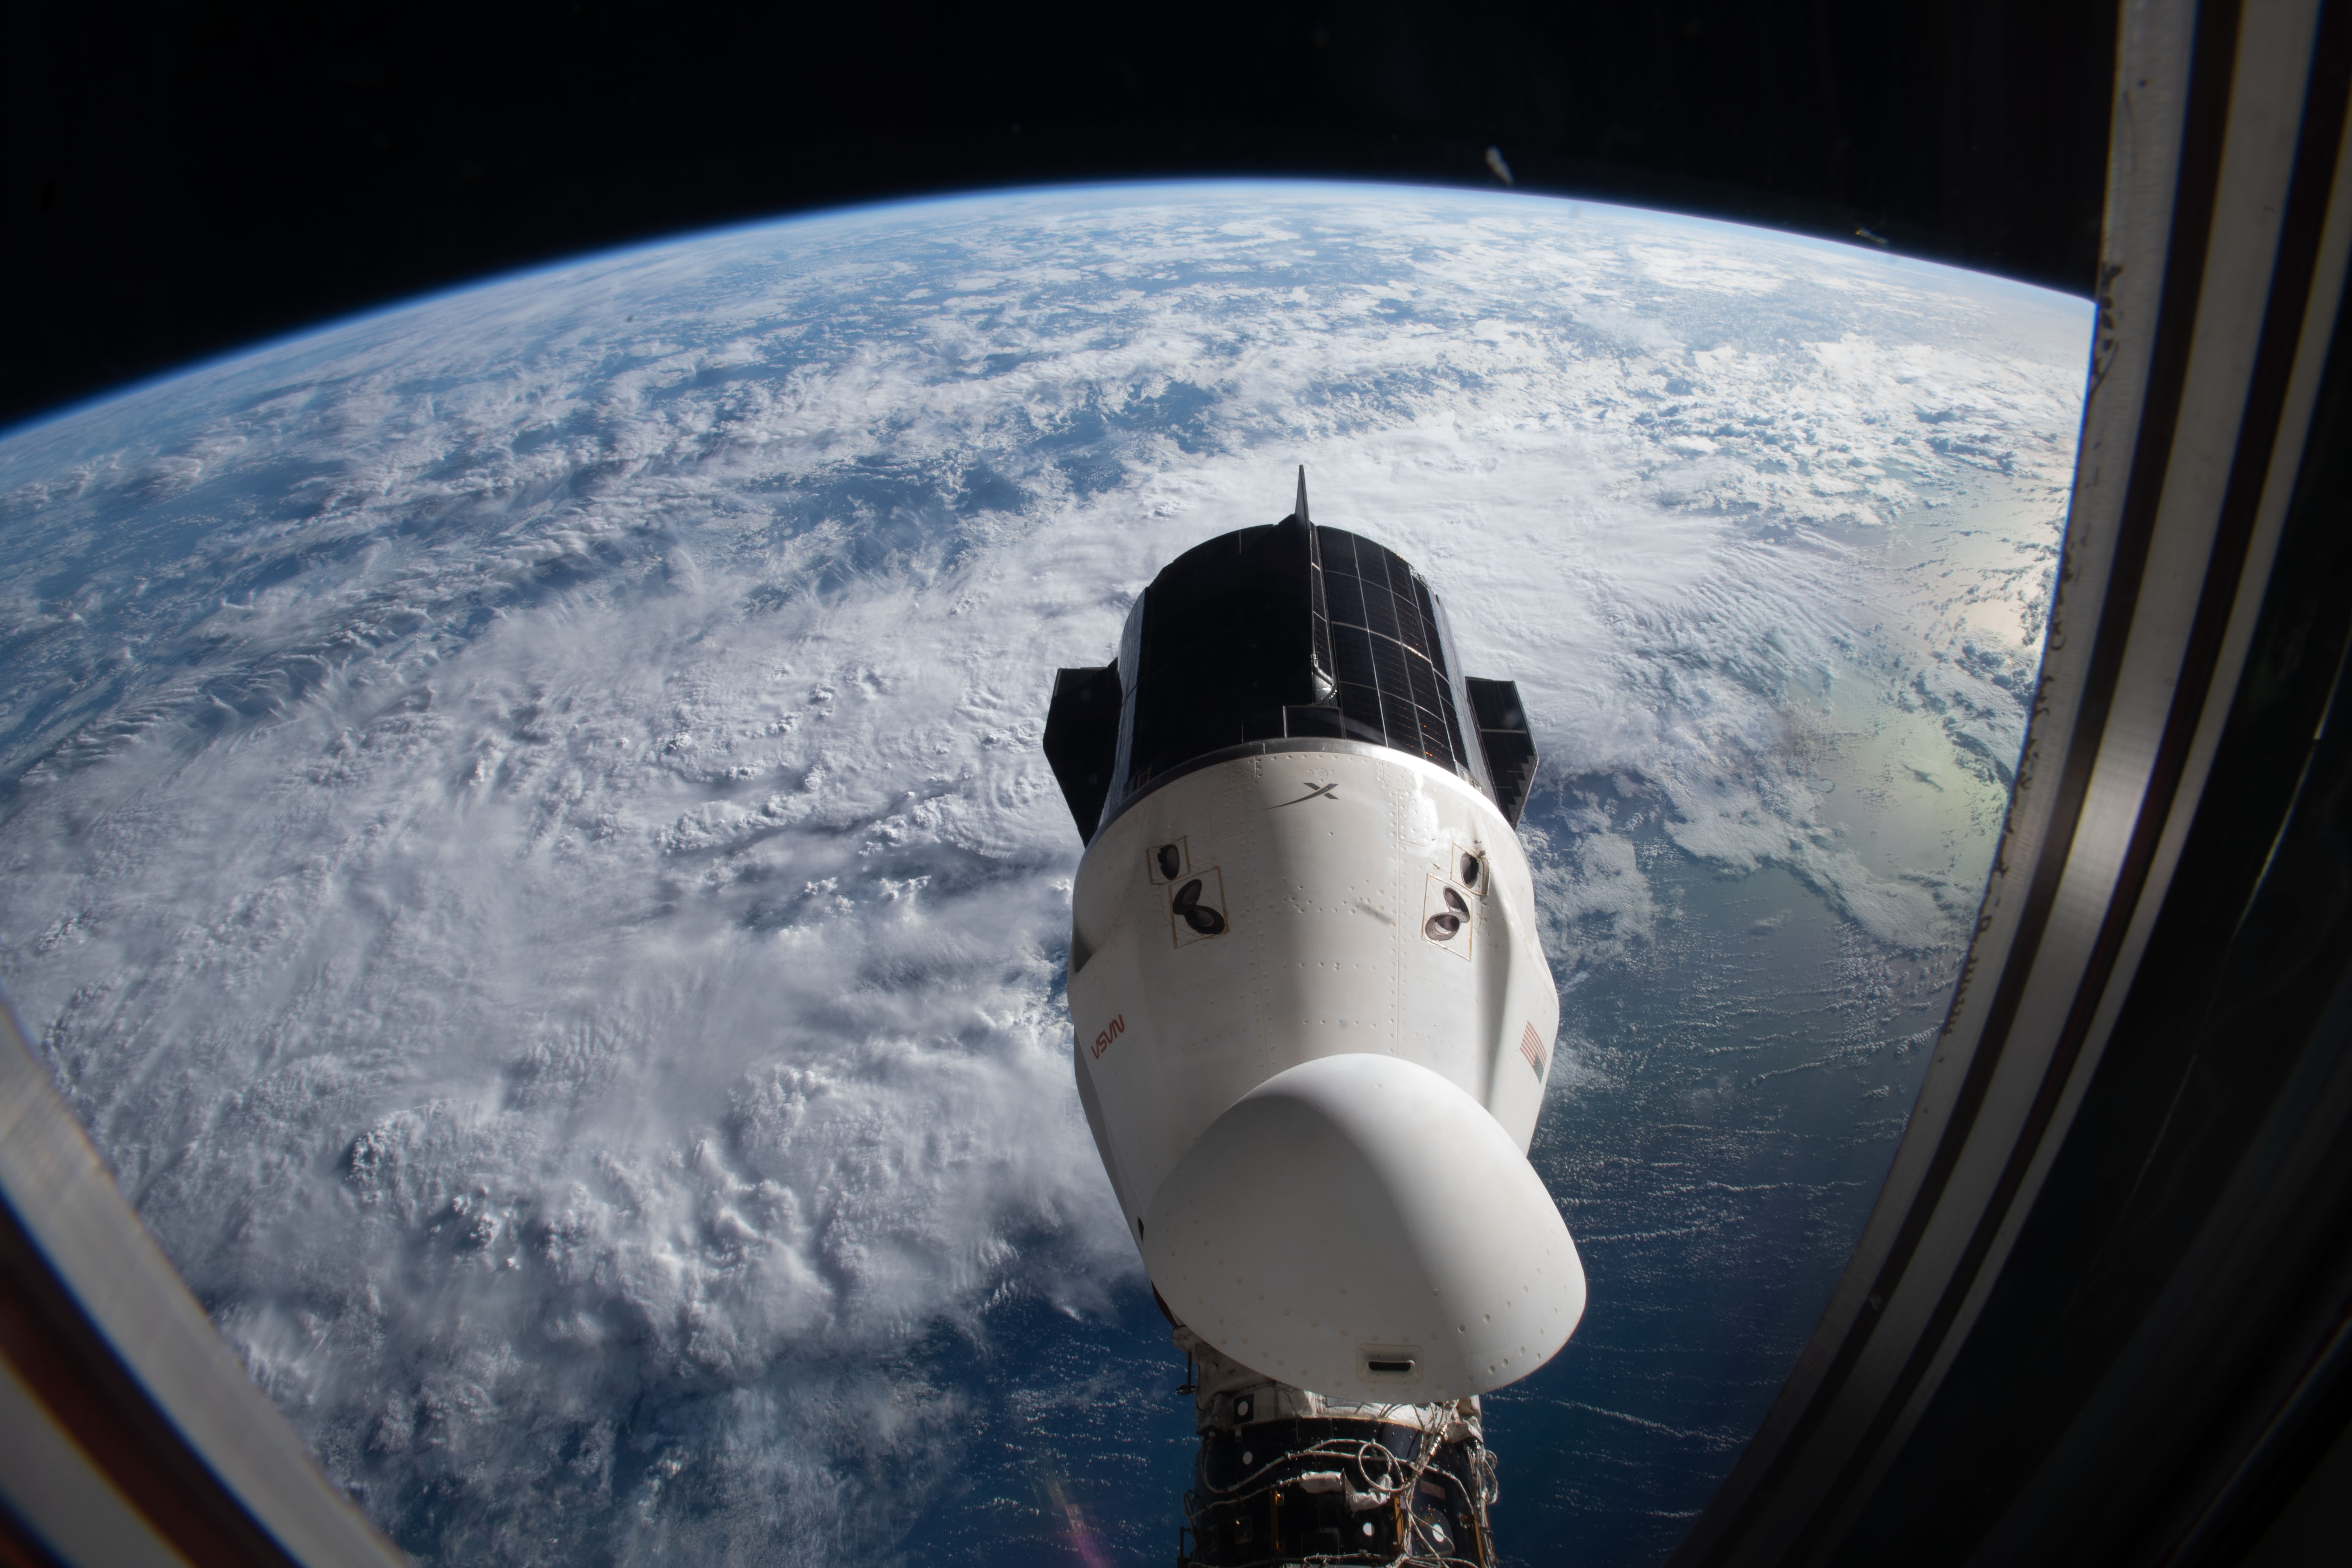 Kapsuła Dragon 2 Endurance zadokowana do ISS podczas misji Crew-3 (Źródło: NASA Johnson)